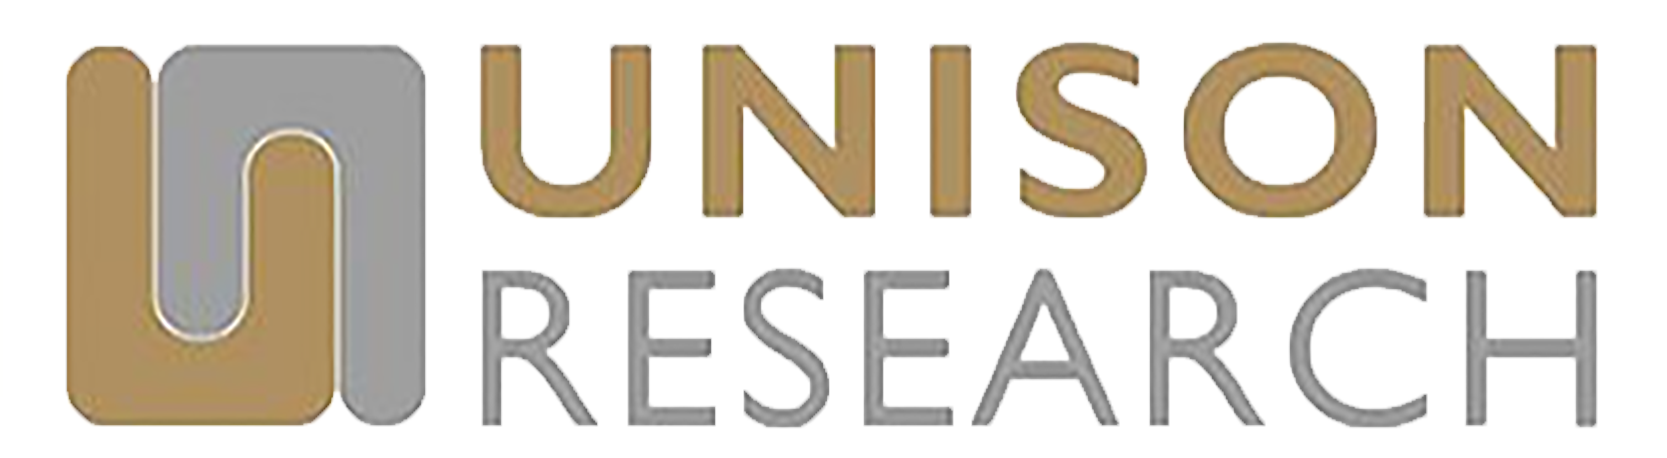 展樂音響 台南 經營品牌 Unison Research